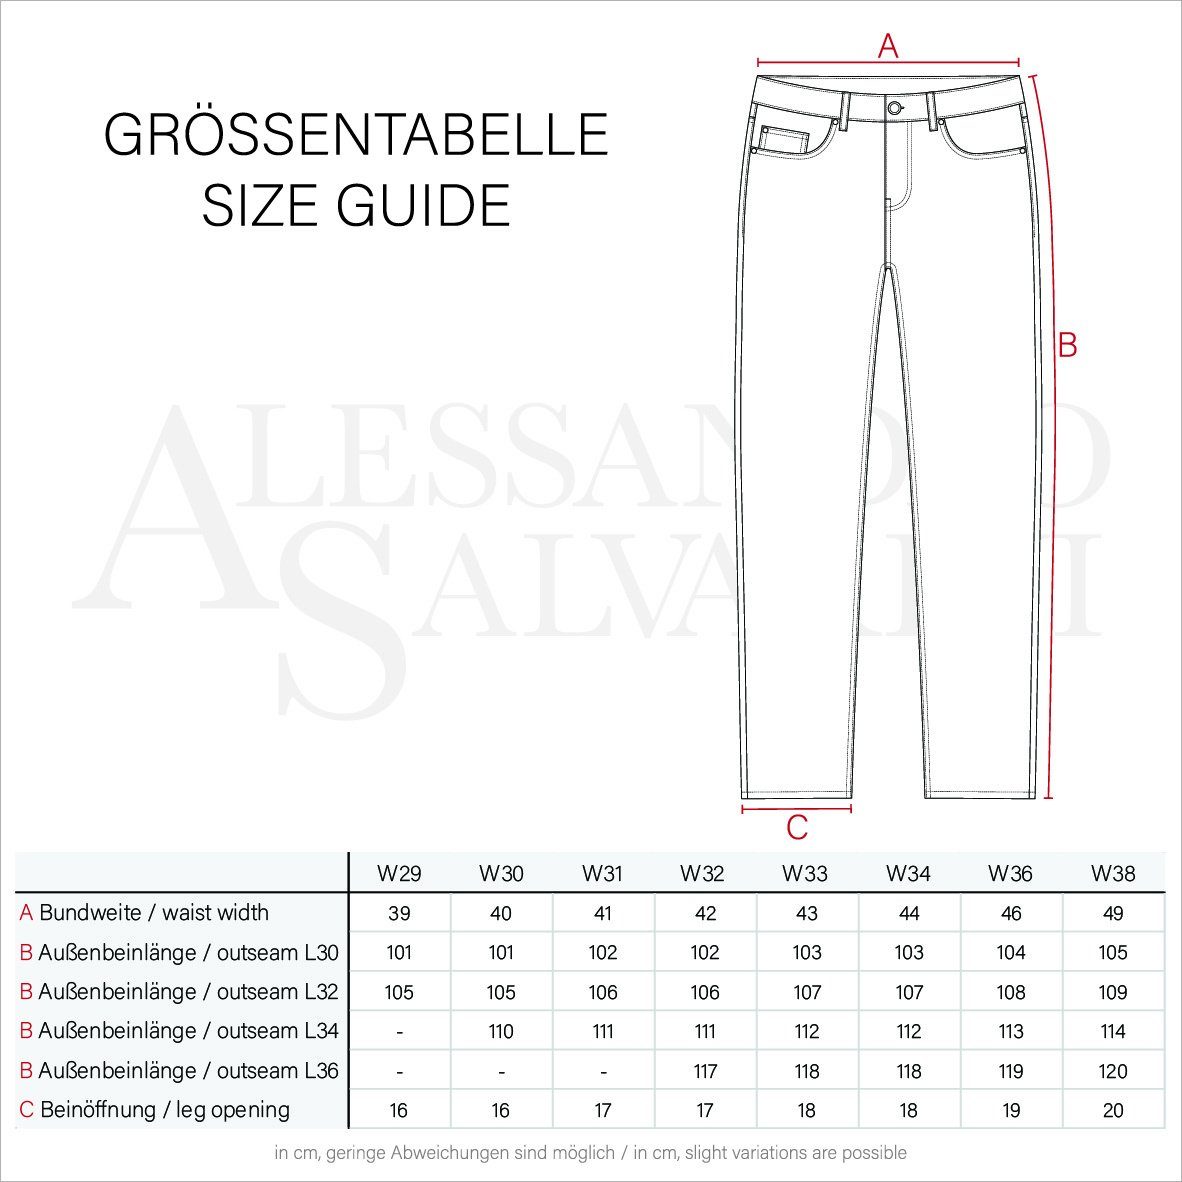 Effekt look Blau used Slim-fit-Jeans ASCatania Used AS-160 Salvarini Alessandro und Elasthan 2% - mit mit